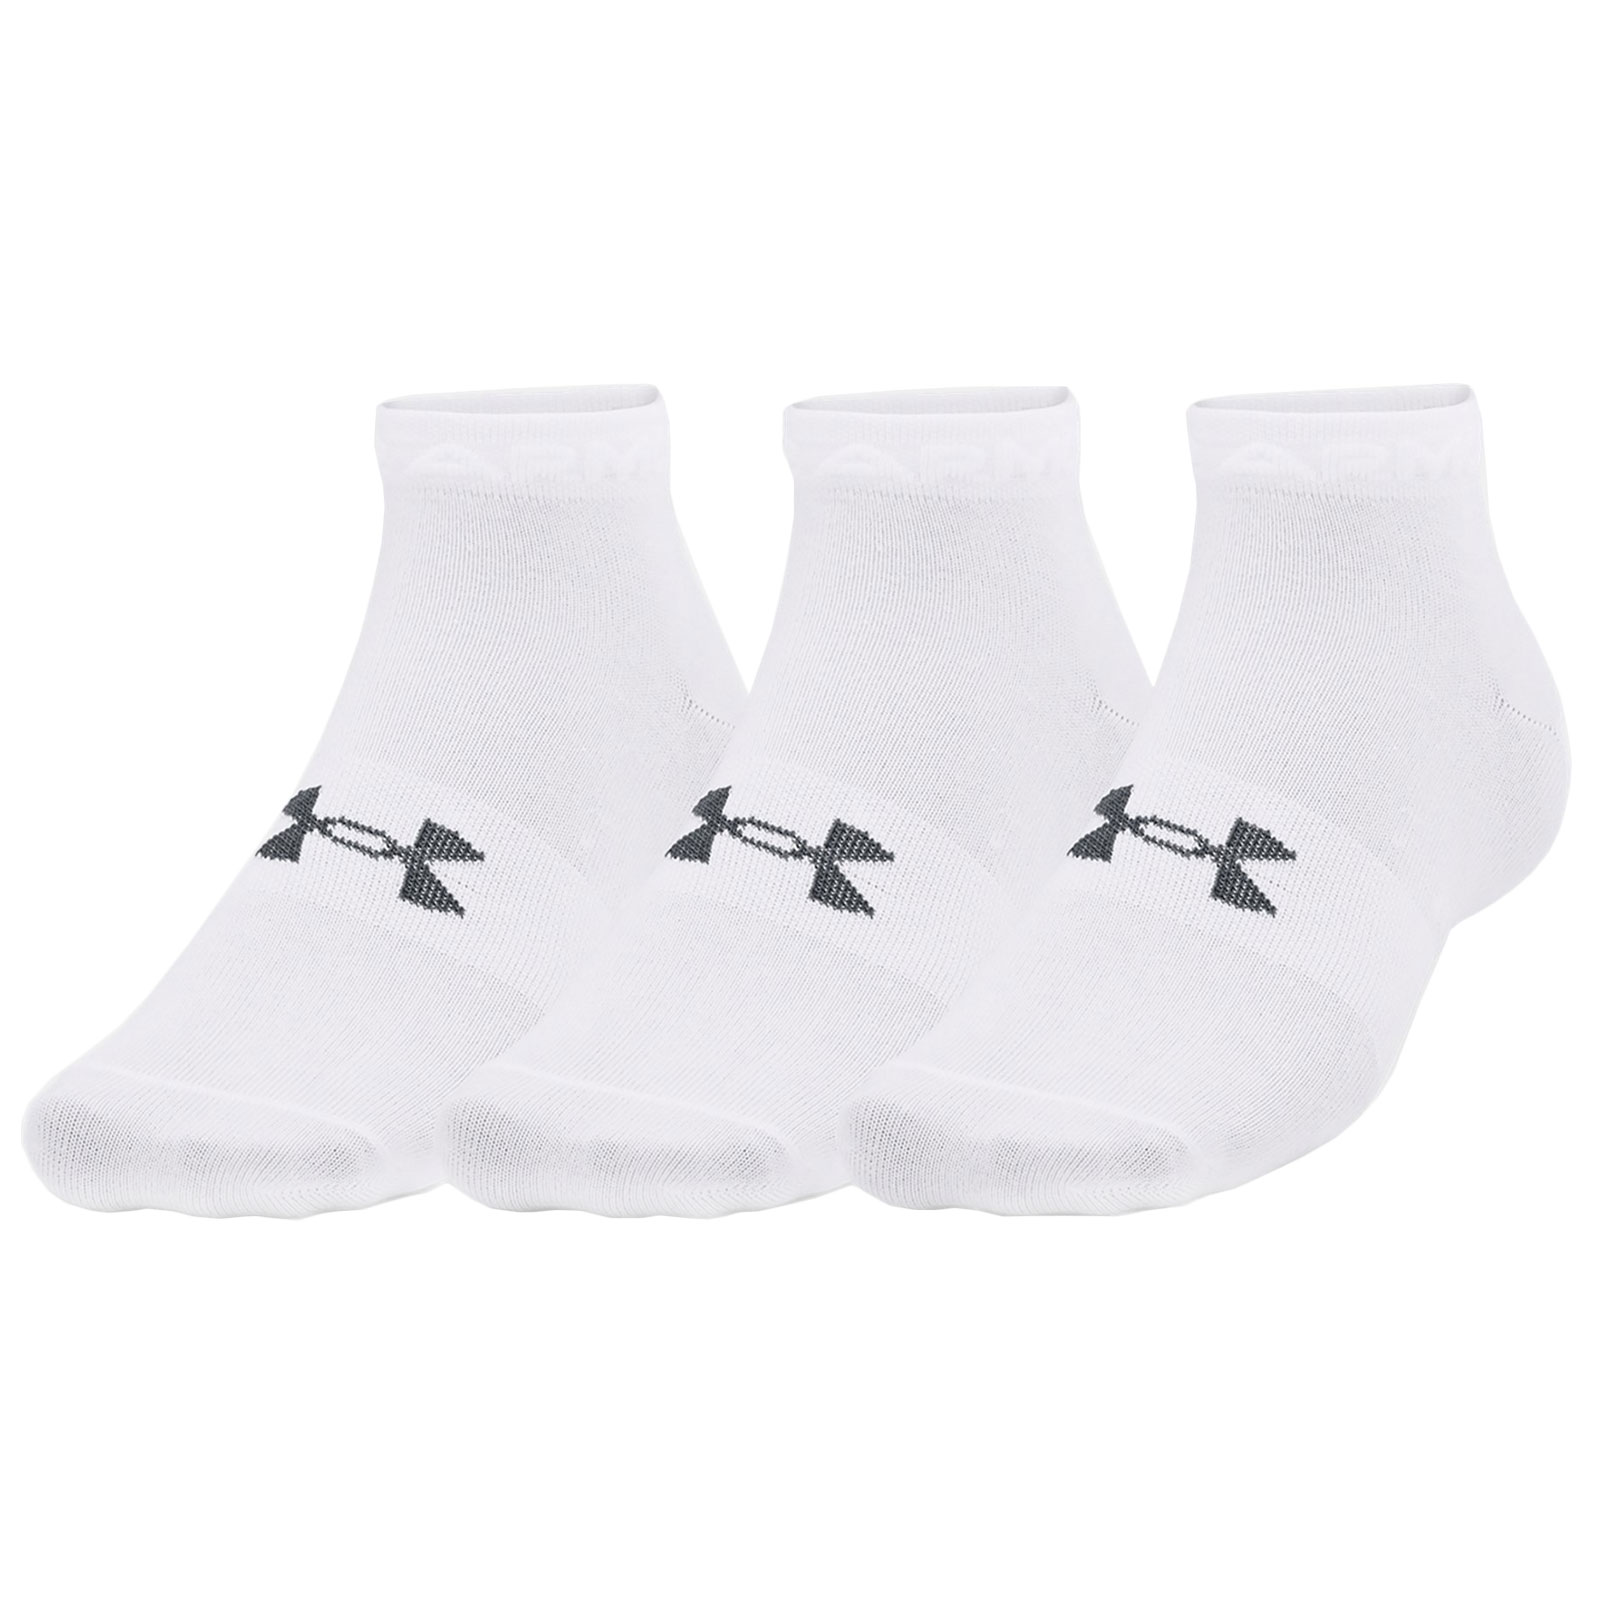 Produktbild von Under Armour UA Essential Low Cut Socken im 3er-Pack - Weiß / Pitch Gray